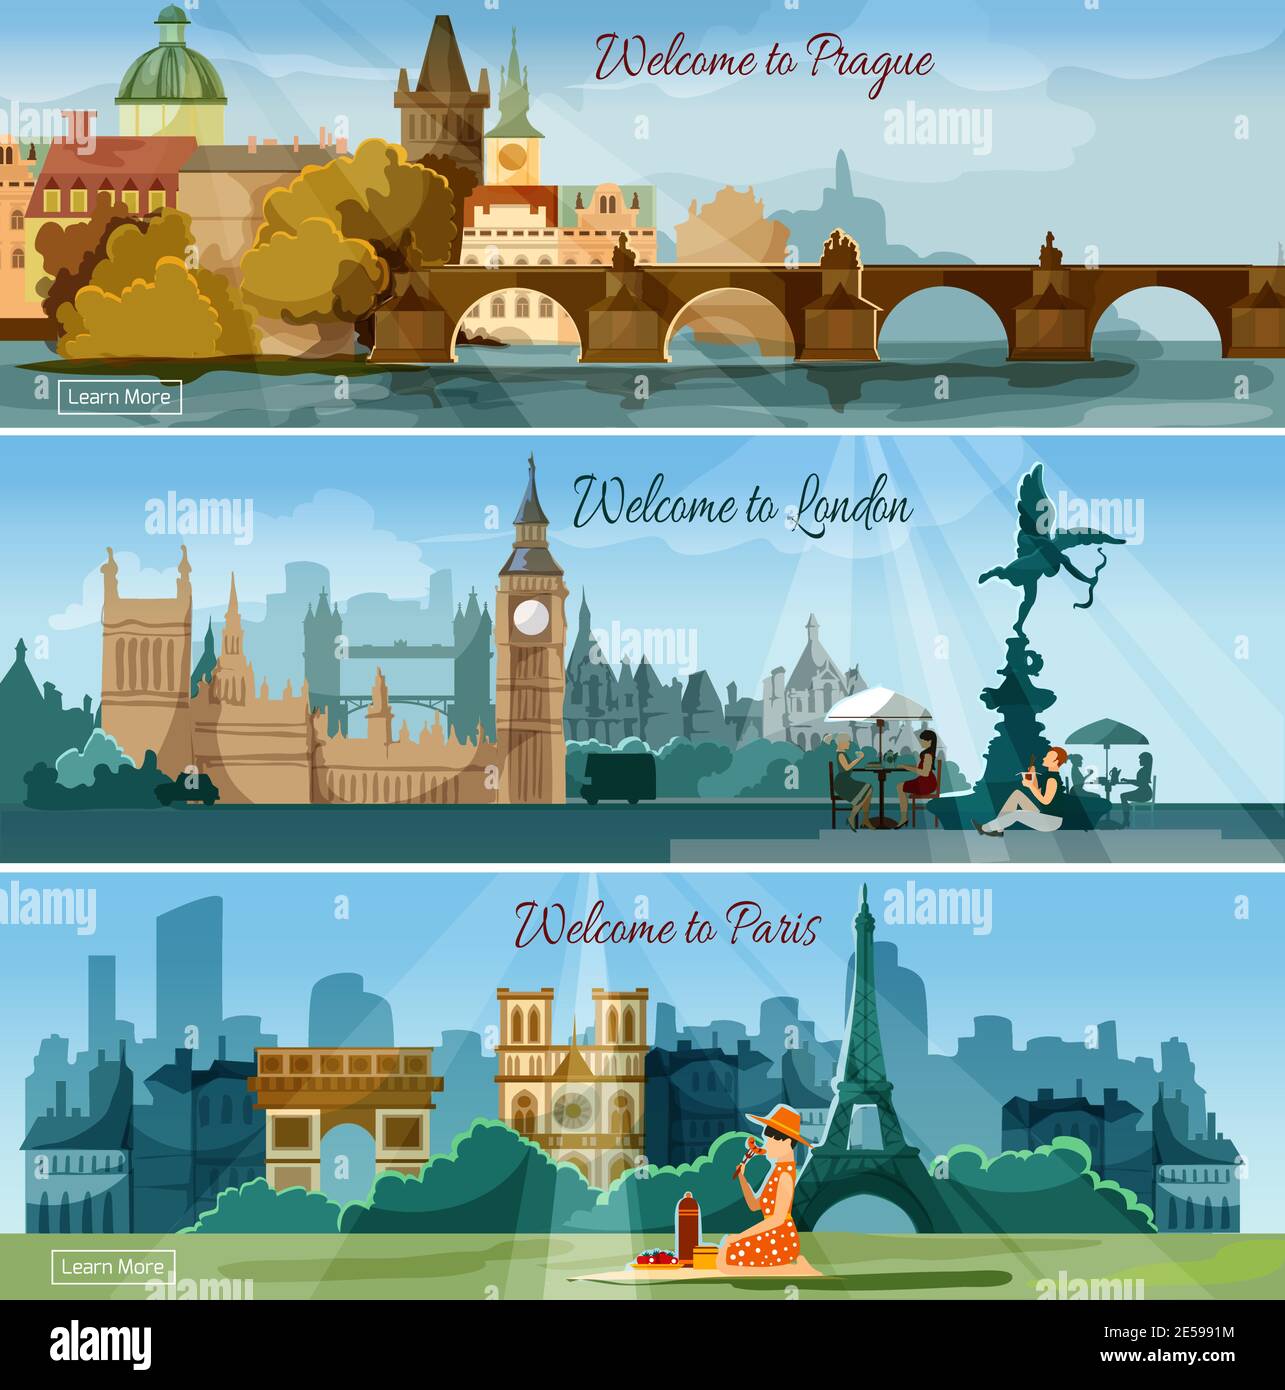 Visites de vacances internationales publicité 3 bannières plates fixer affiche avec les capitales européennes sont une illustration abstraite de vecteur isolé Illustration de Vecteur